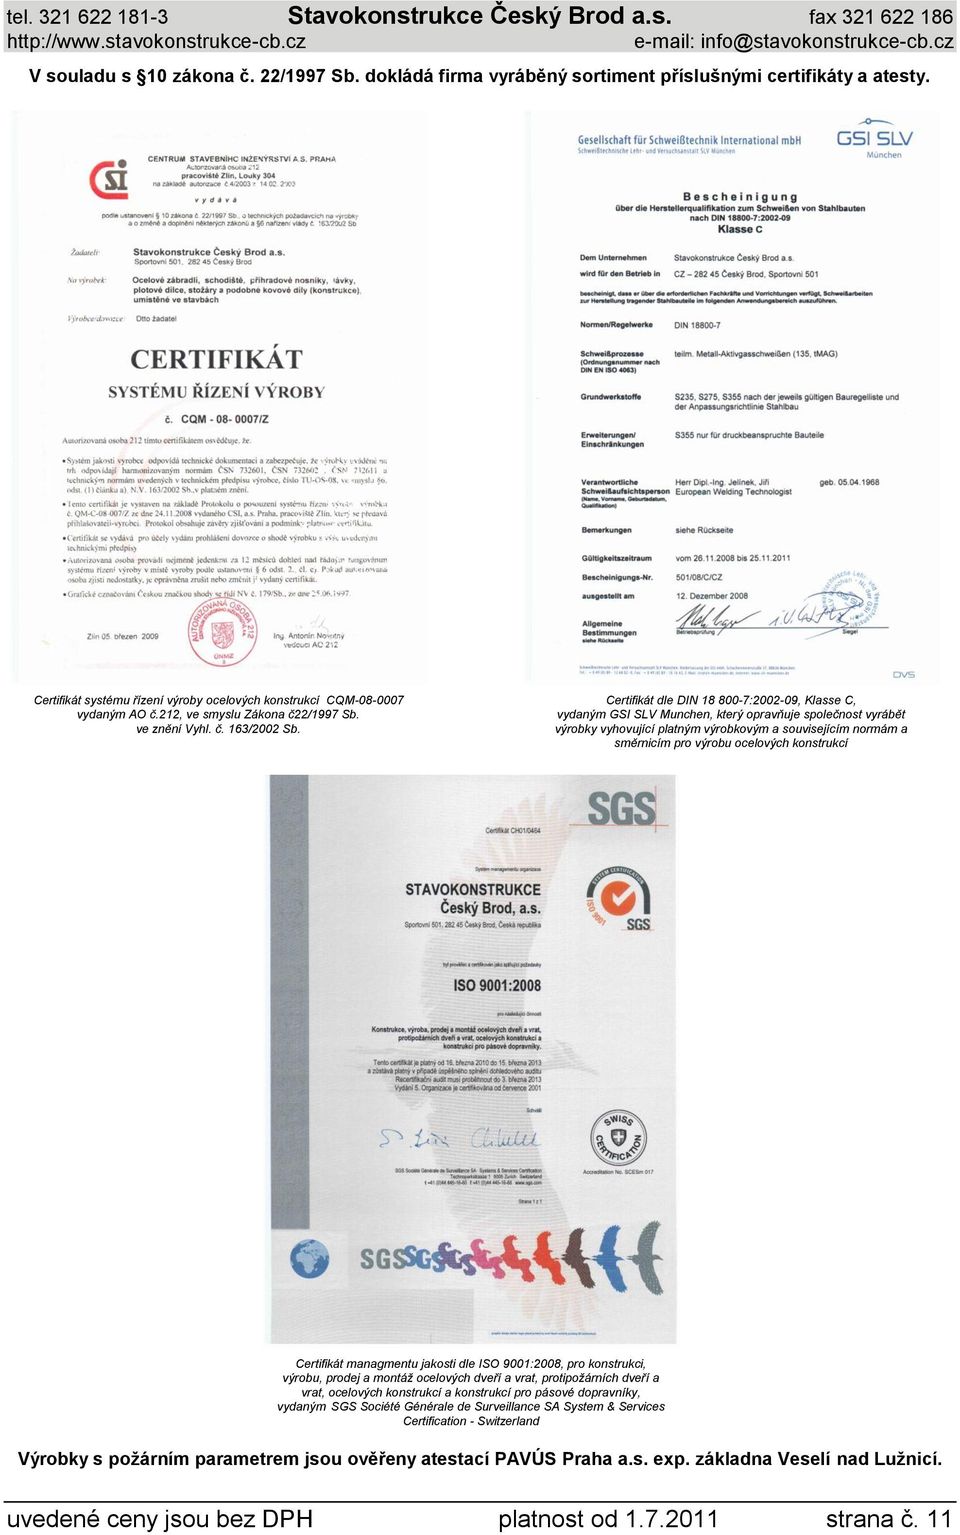 Certifikát dle DIN 18 800-7:2002-09, Klasse C, vydaným GSI SLV Munchen, který opravňuje společnost vyrábět výrobky vyhovující platným výrobkovým a souvisejícím normám a směrnicím pro výrobu ocelových